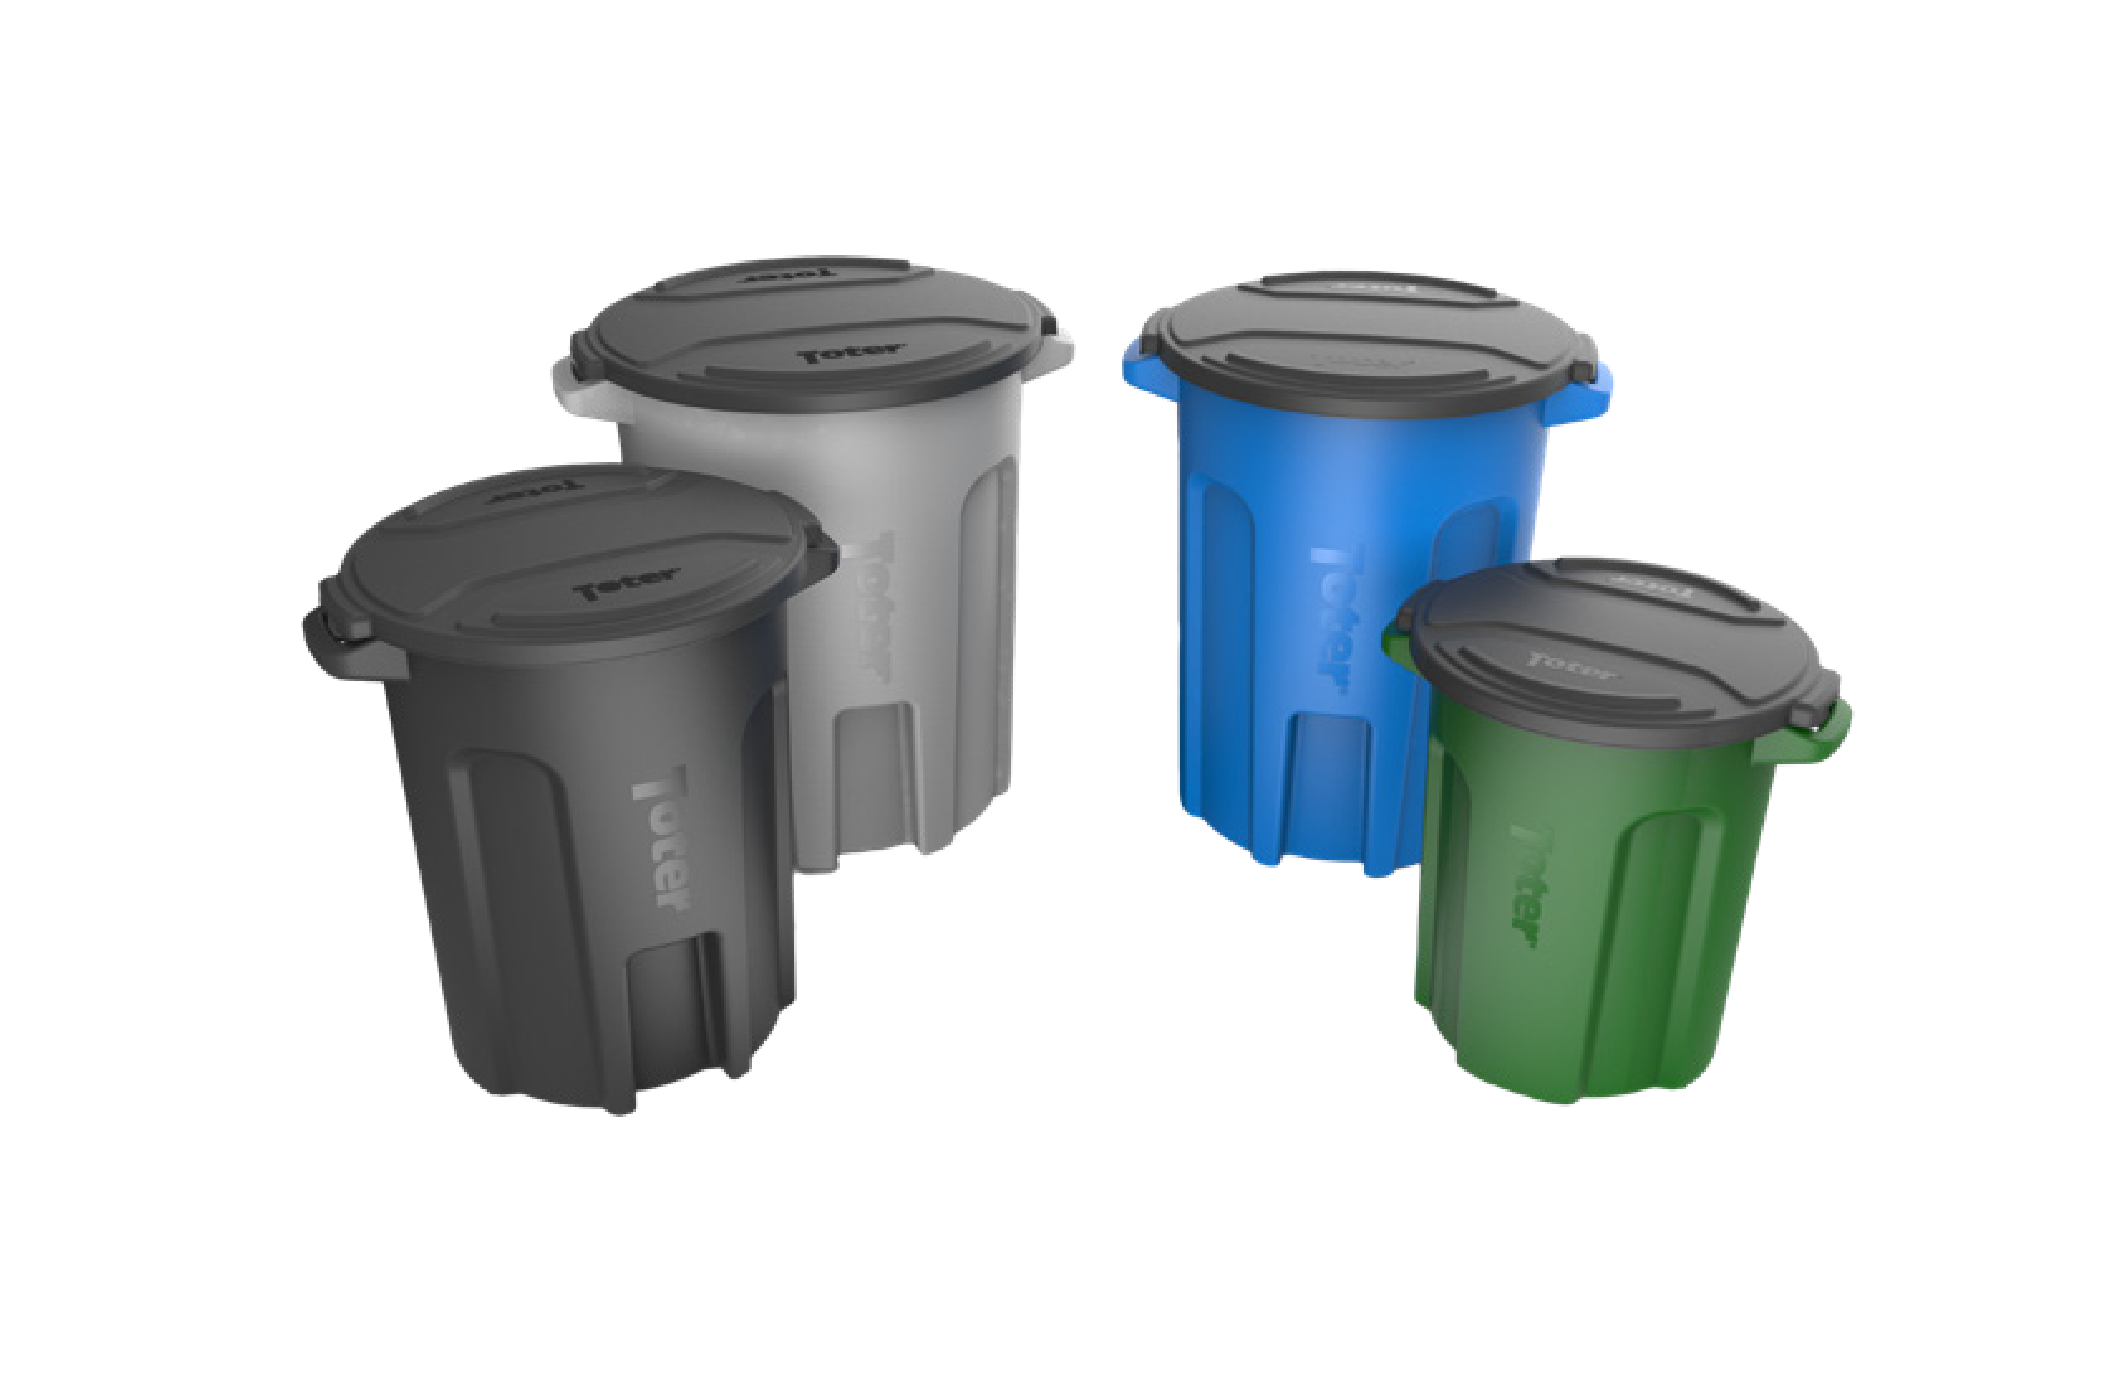 plastic trash barrels